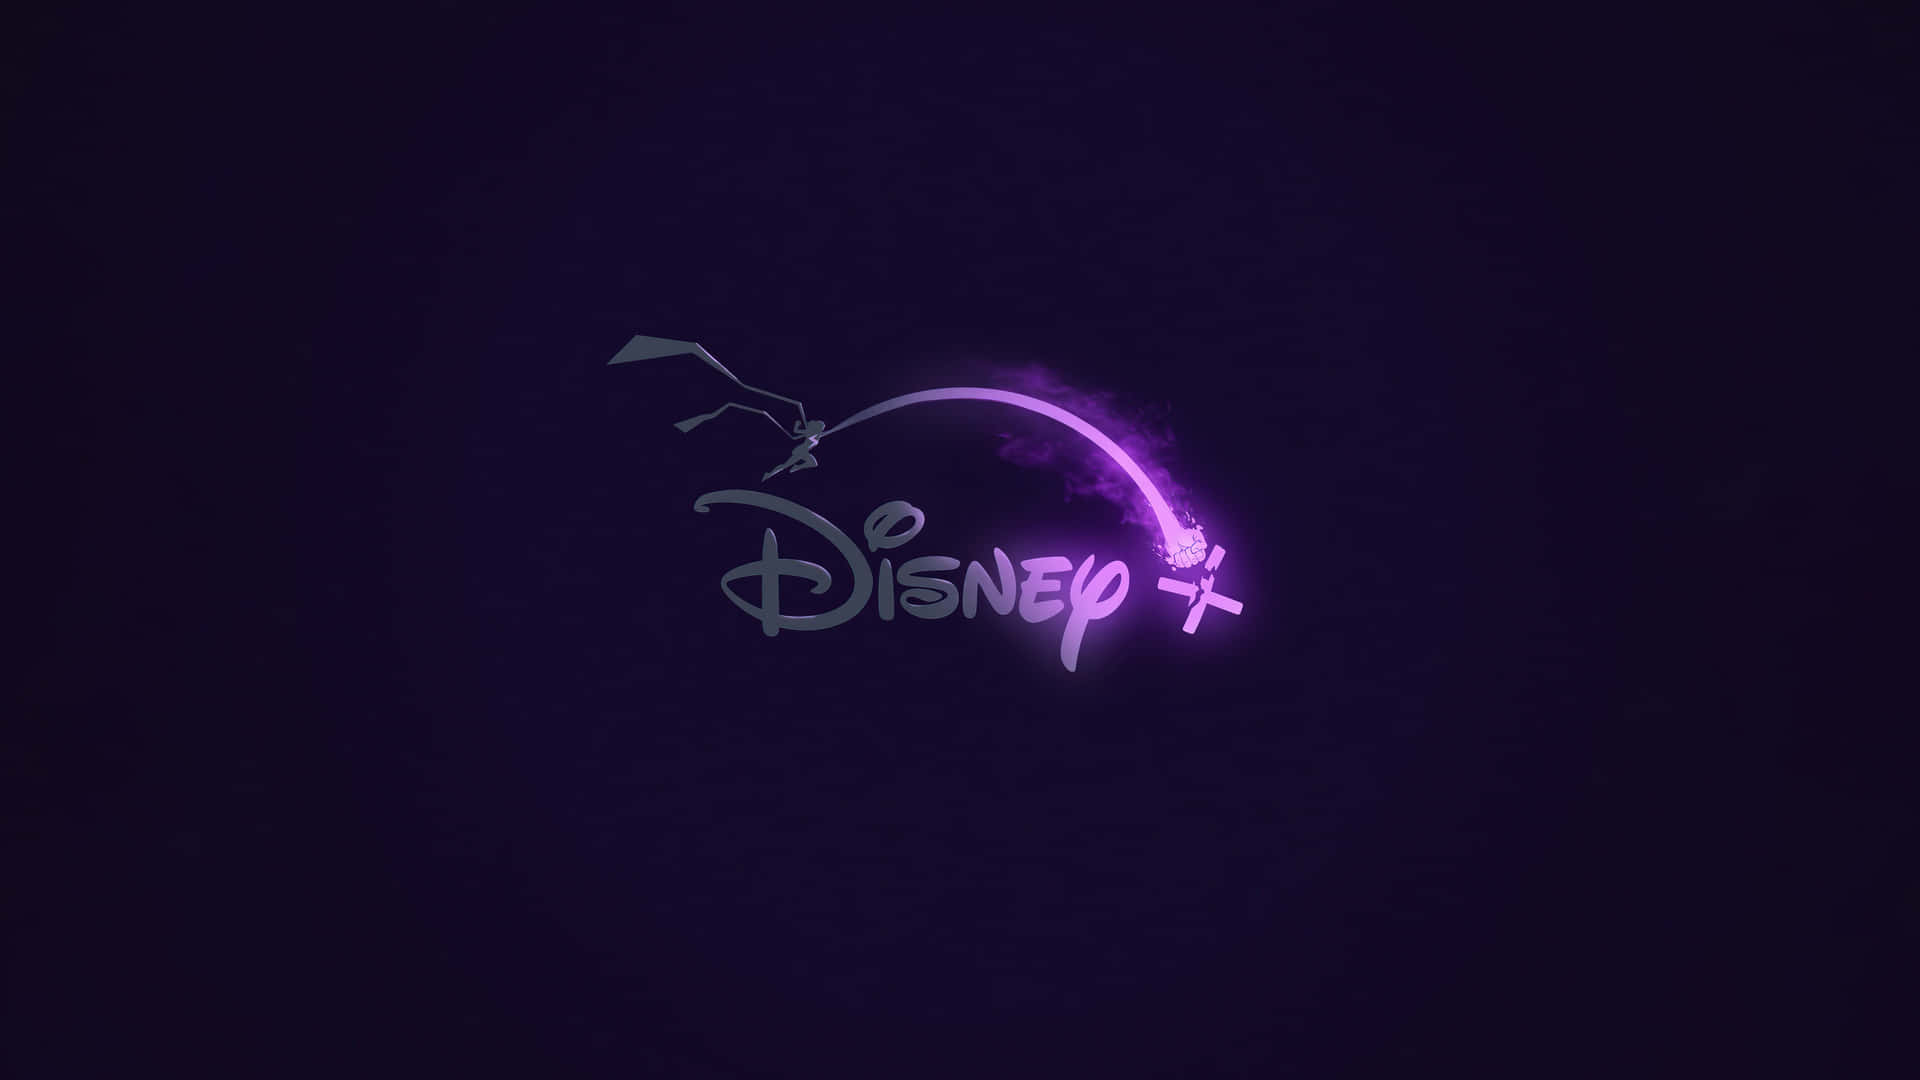 Plano De Fundo Disney Plus